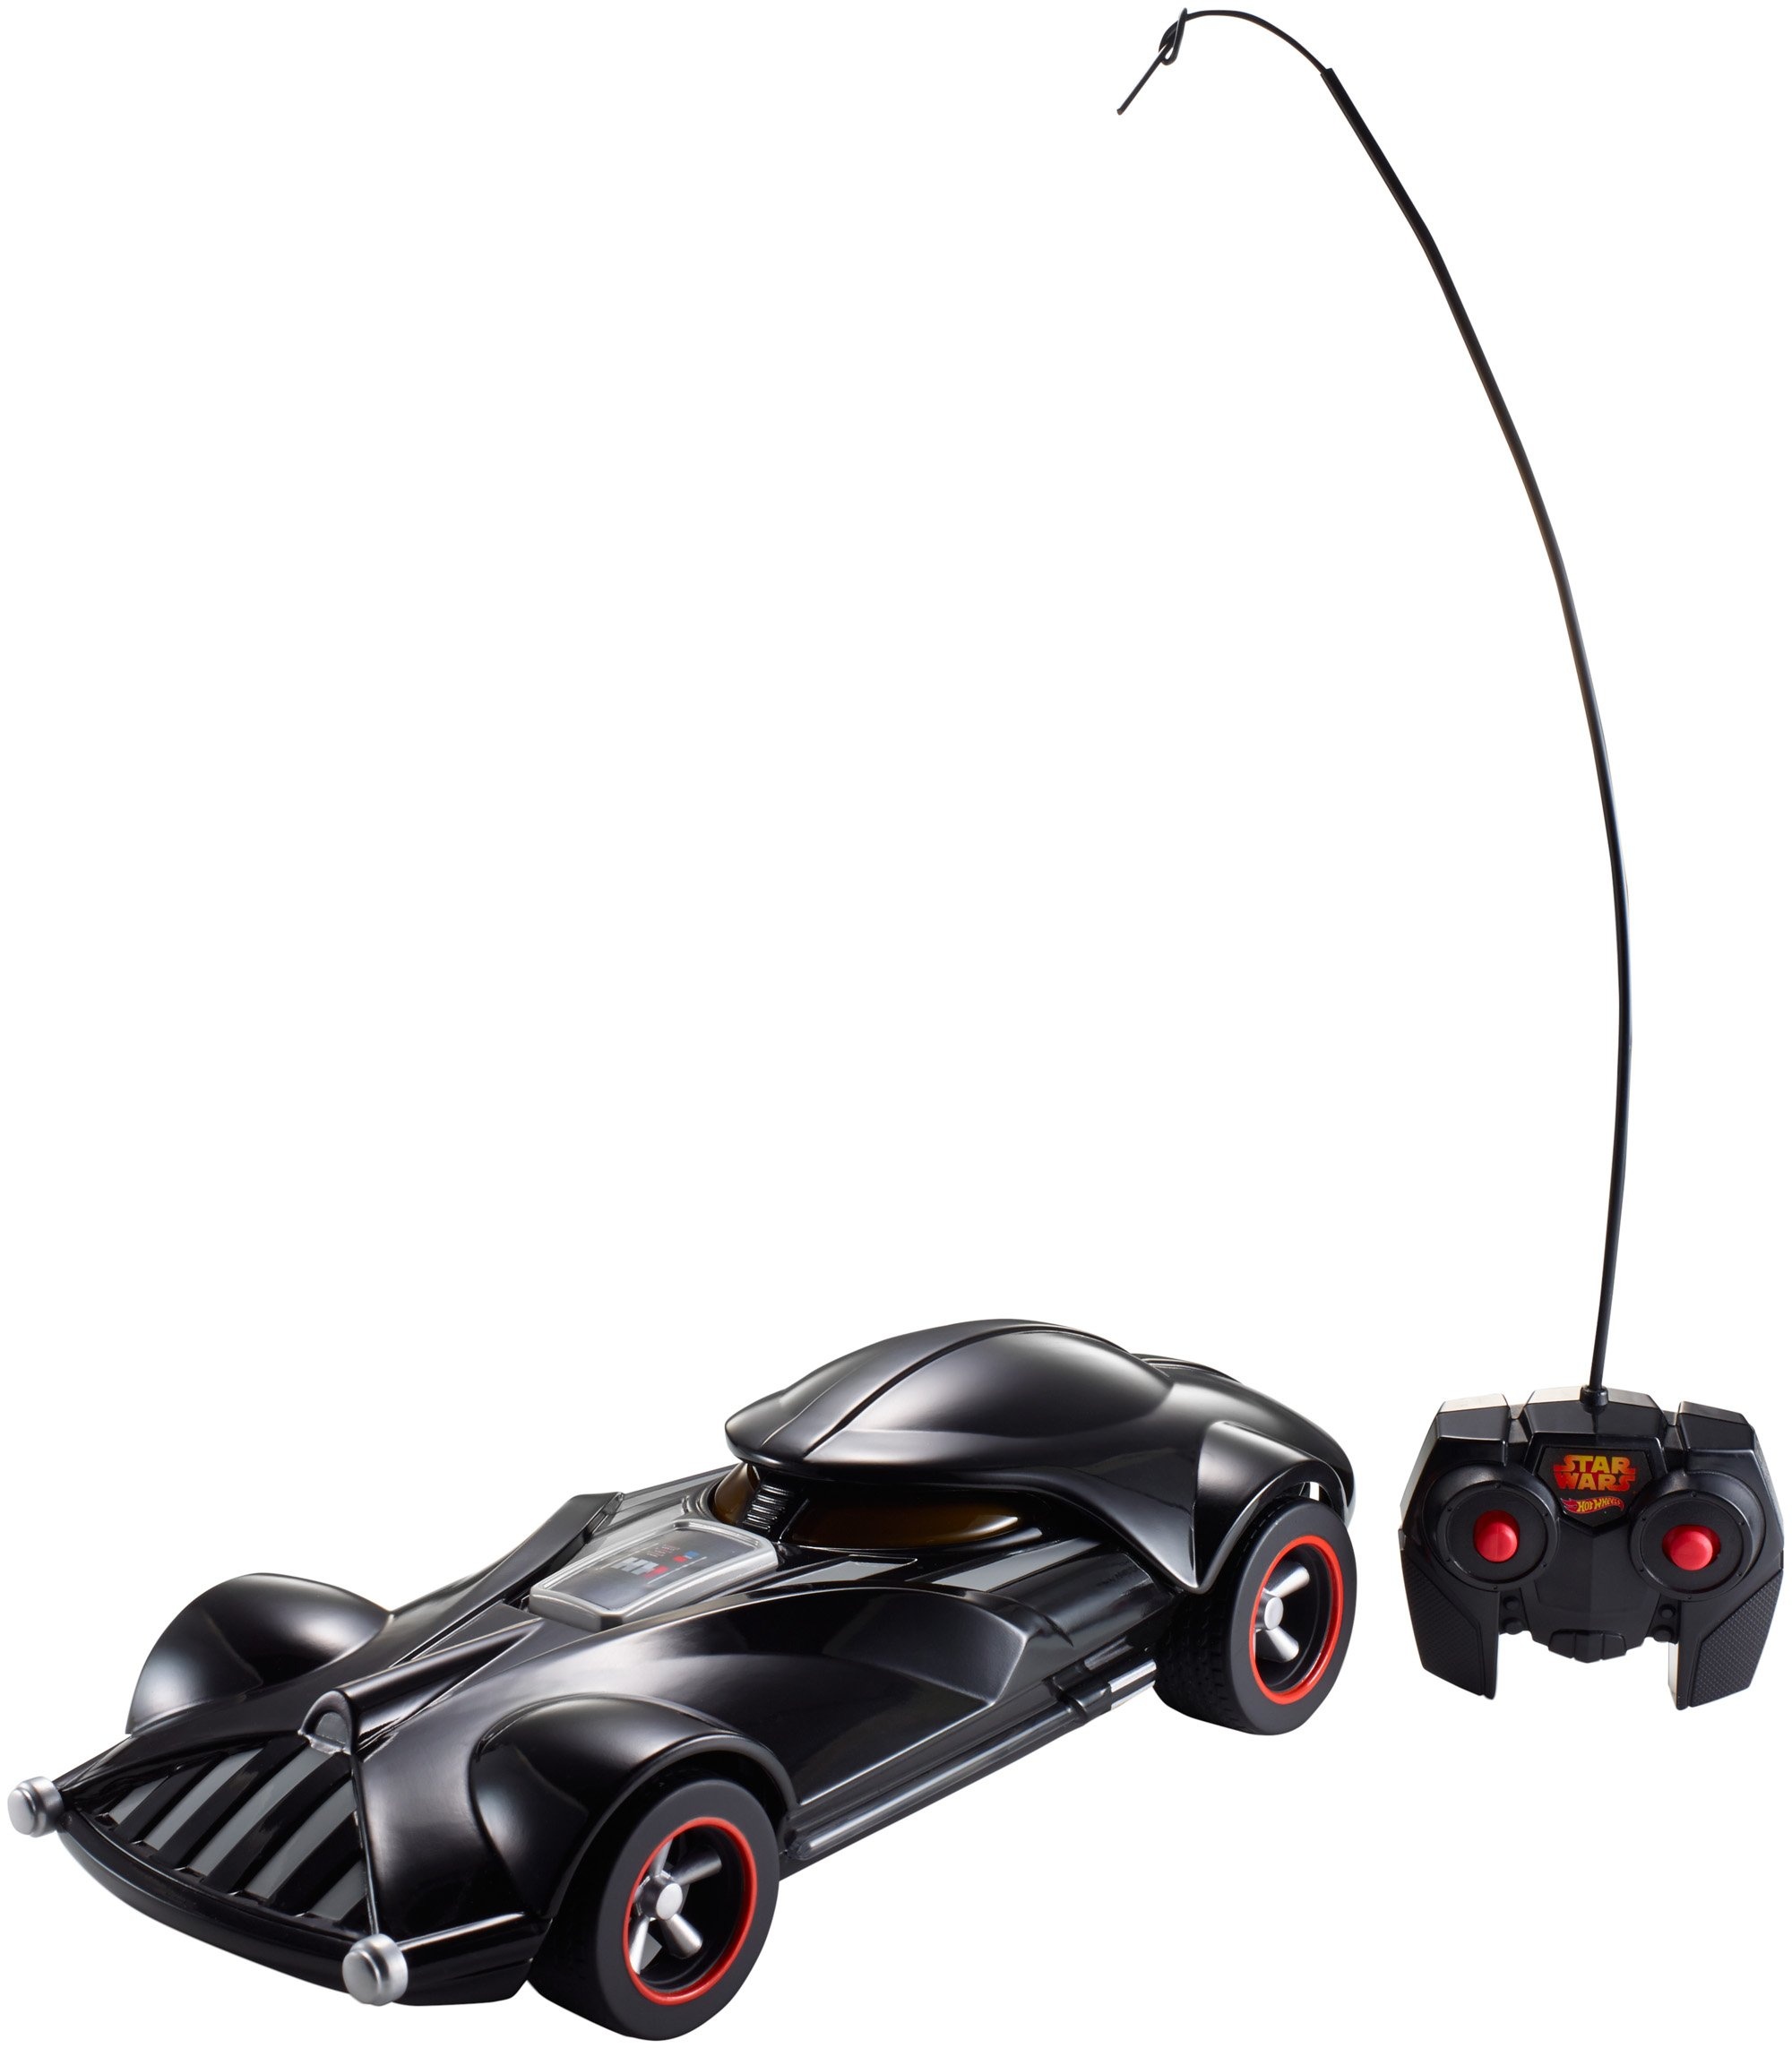 Hot Wheels FBW75 Star Wars Darth Vader RC Fahrzeug mit Lights und Sounds, Ferngesteuertes Auto mit Controller, Spielzeug ab 3 Jahren